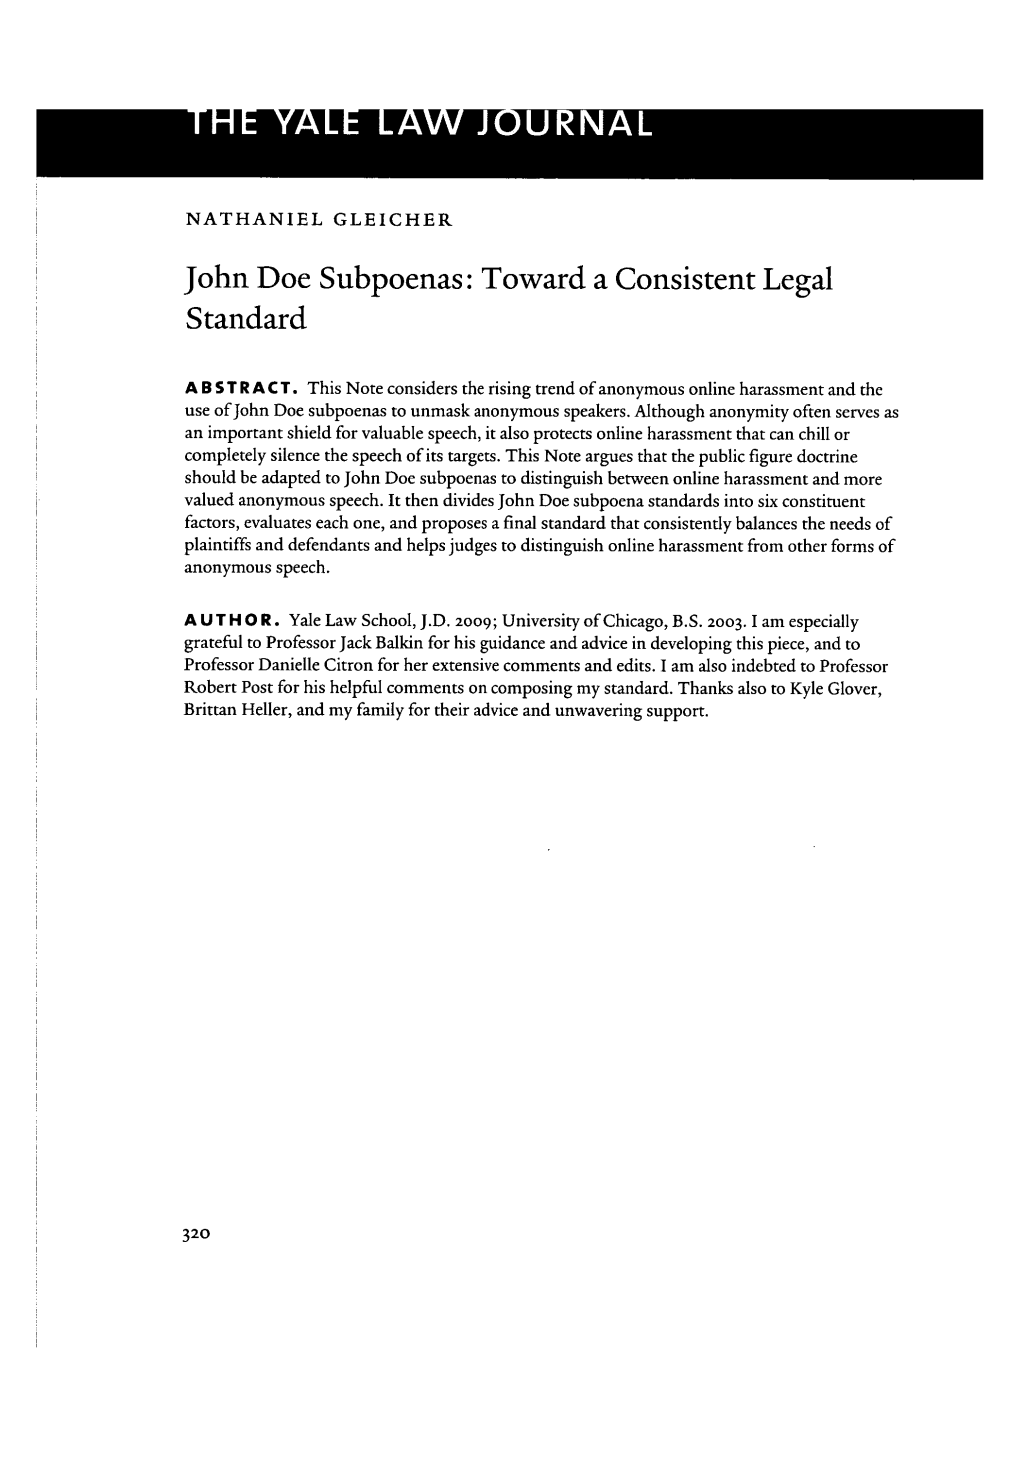 John Doe Subpoenas: Toward a Consistent Legal Standard